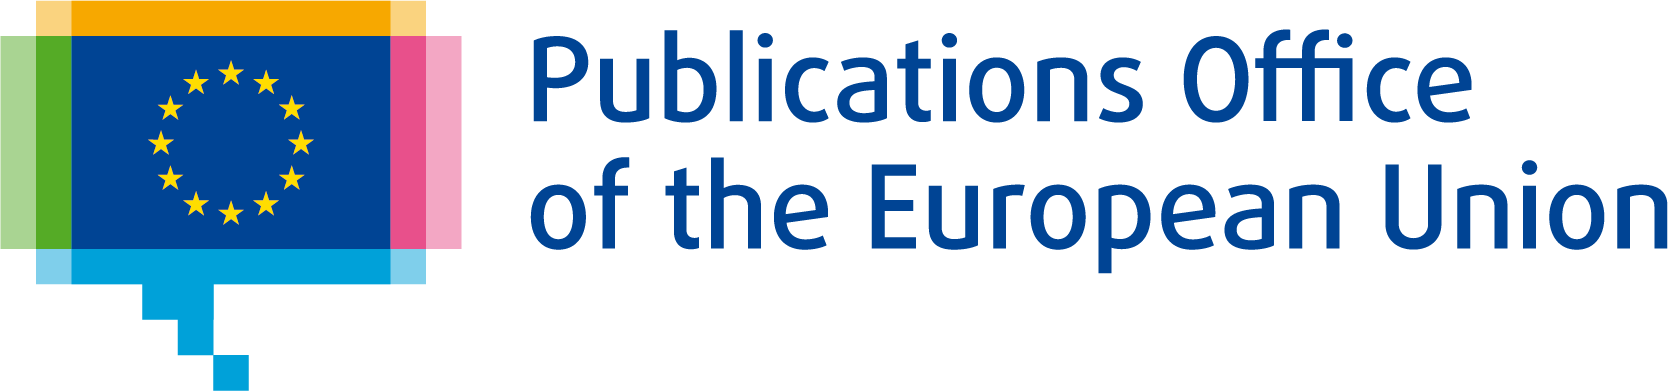 EU Publications